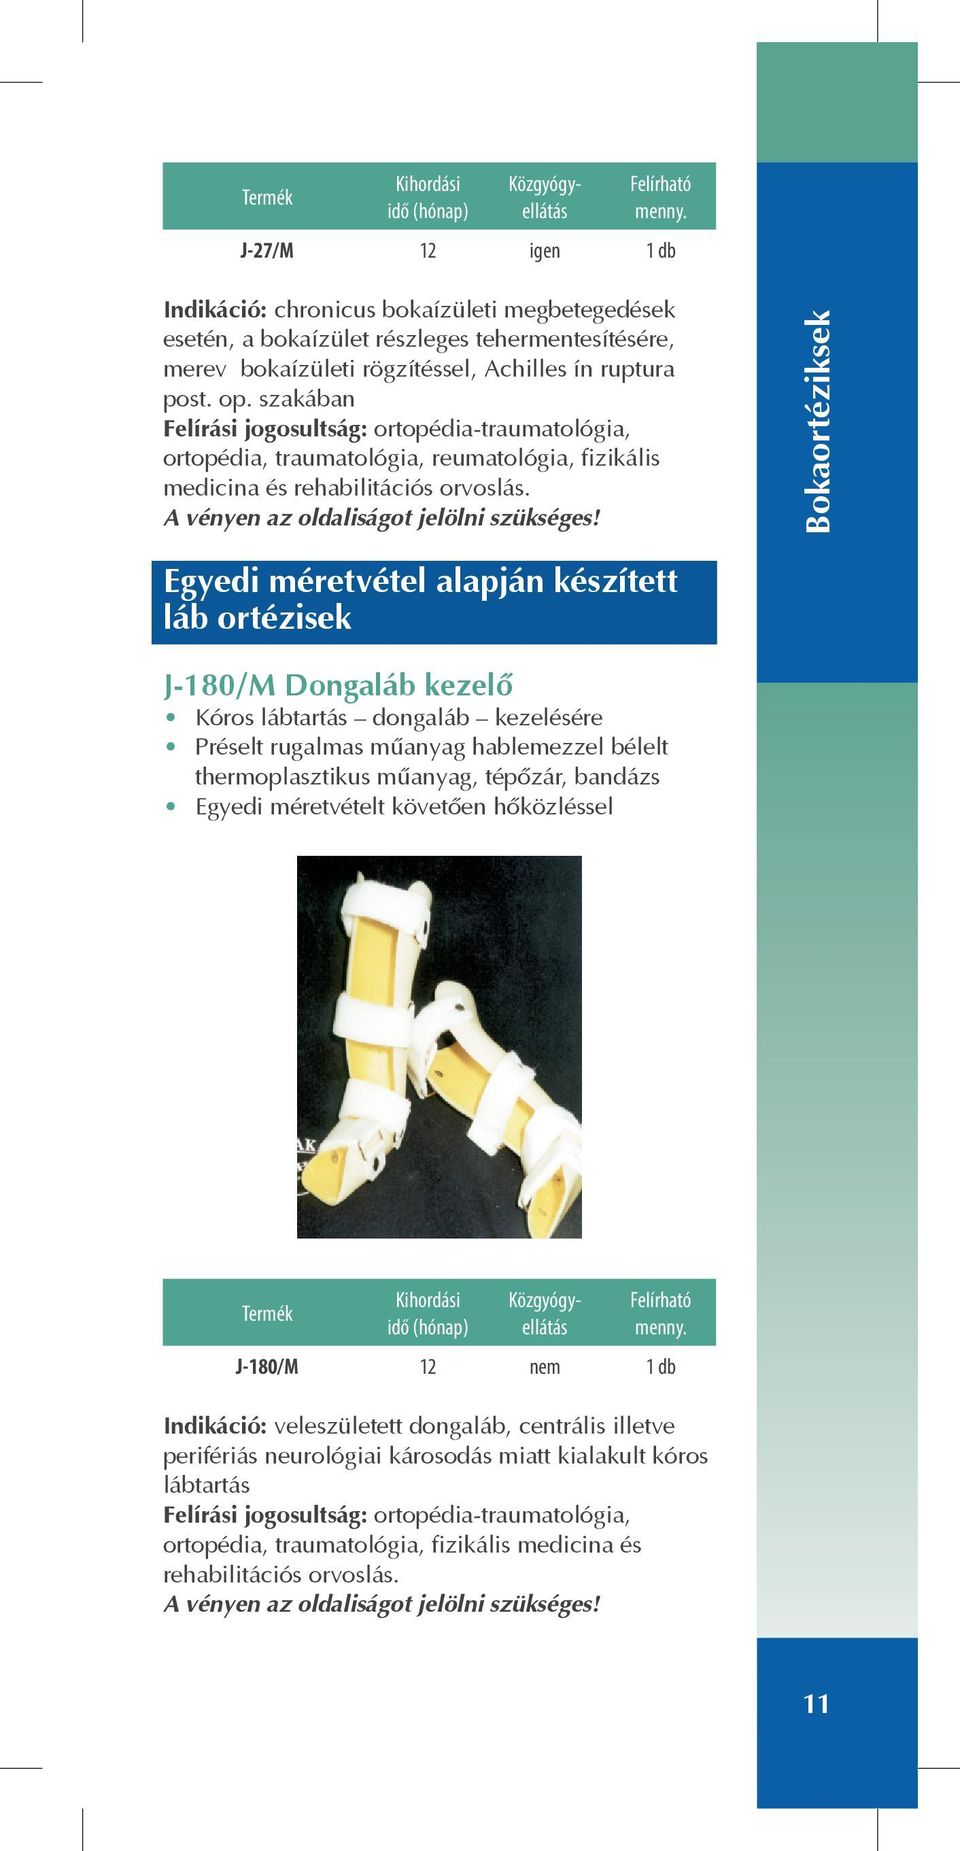 Bokaortéziksek Egyedi méretvétel alapján készített láb ortézisek J-180/M Dongaláb kezelõ Kóros lábtartás dongaláb kezelésére Préselt rugalmas mûanyag hablemezzel bélelt thermoplasztikus